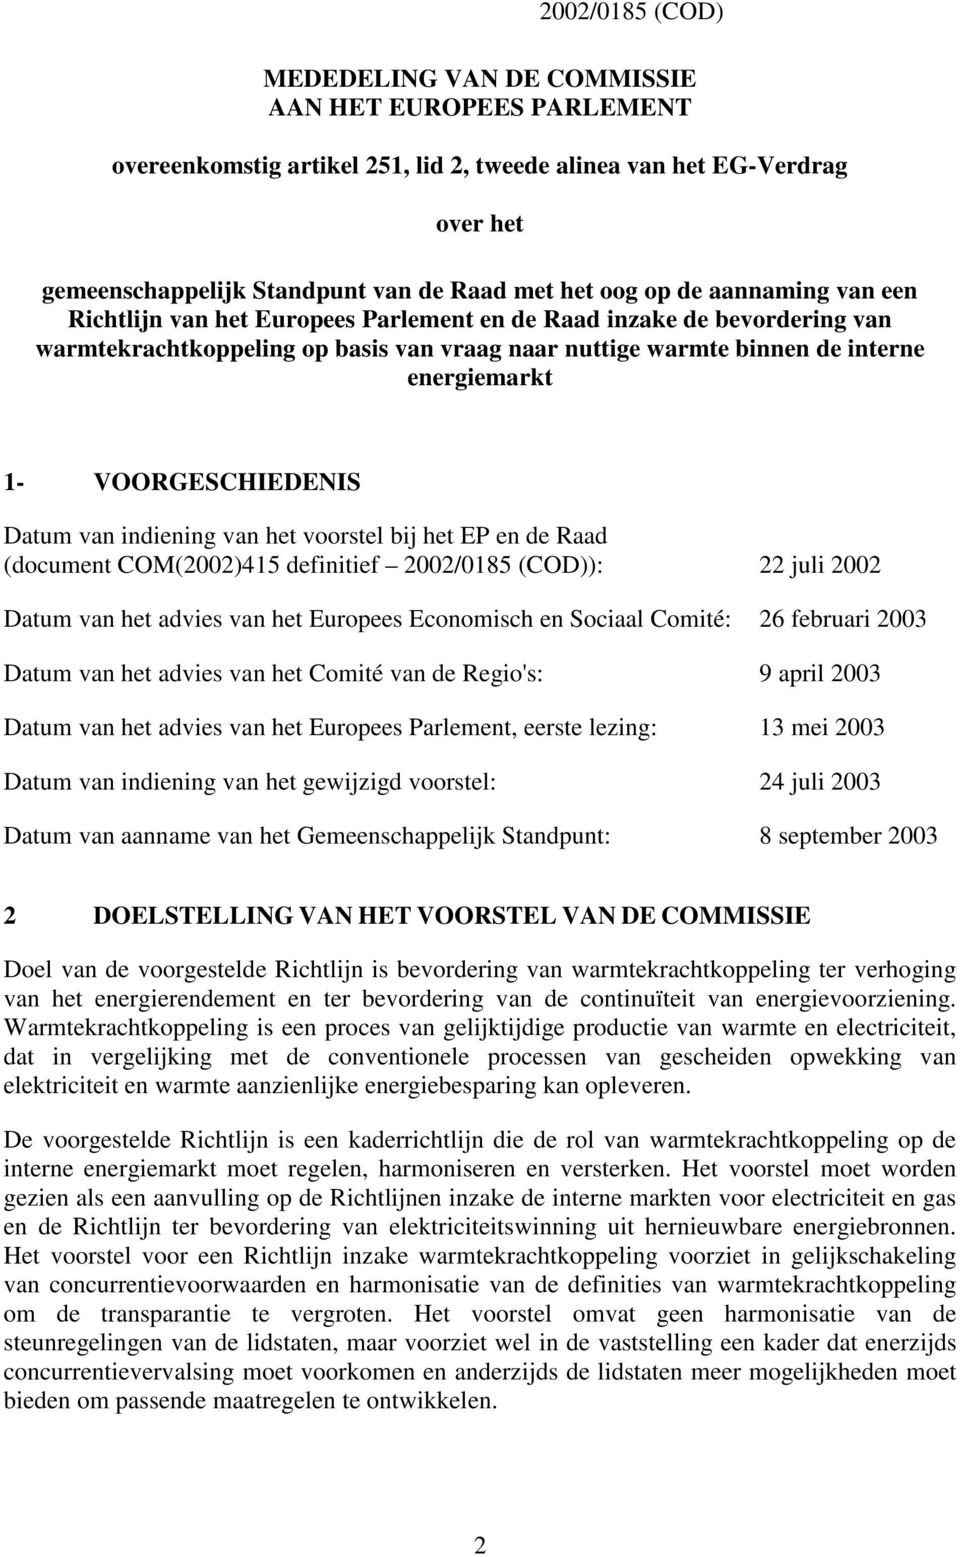 VOORGESCHIEDENIS Datum van indiening van het voorstel bij het EP en de Raad (document COM(2002)415 definitief 2002/0185 (COD)): 22 juli 2002 Datum van het advies van het Europees Economisch en